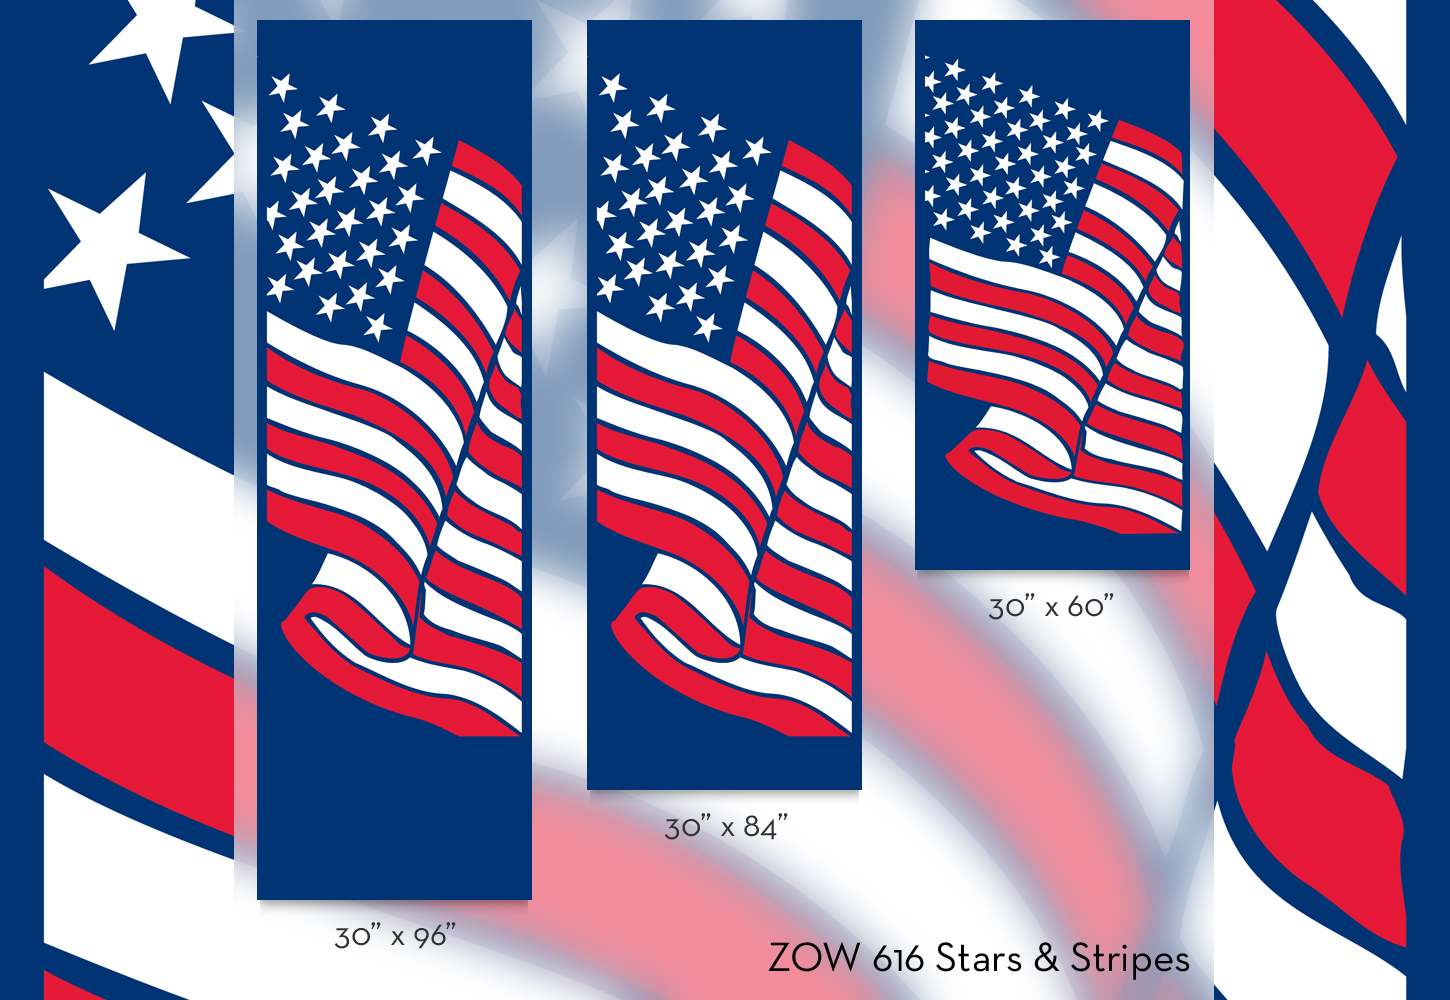 ZOW 616 Stars & Stripes